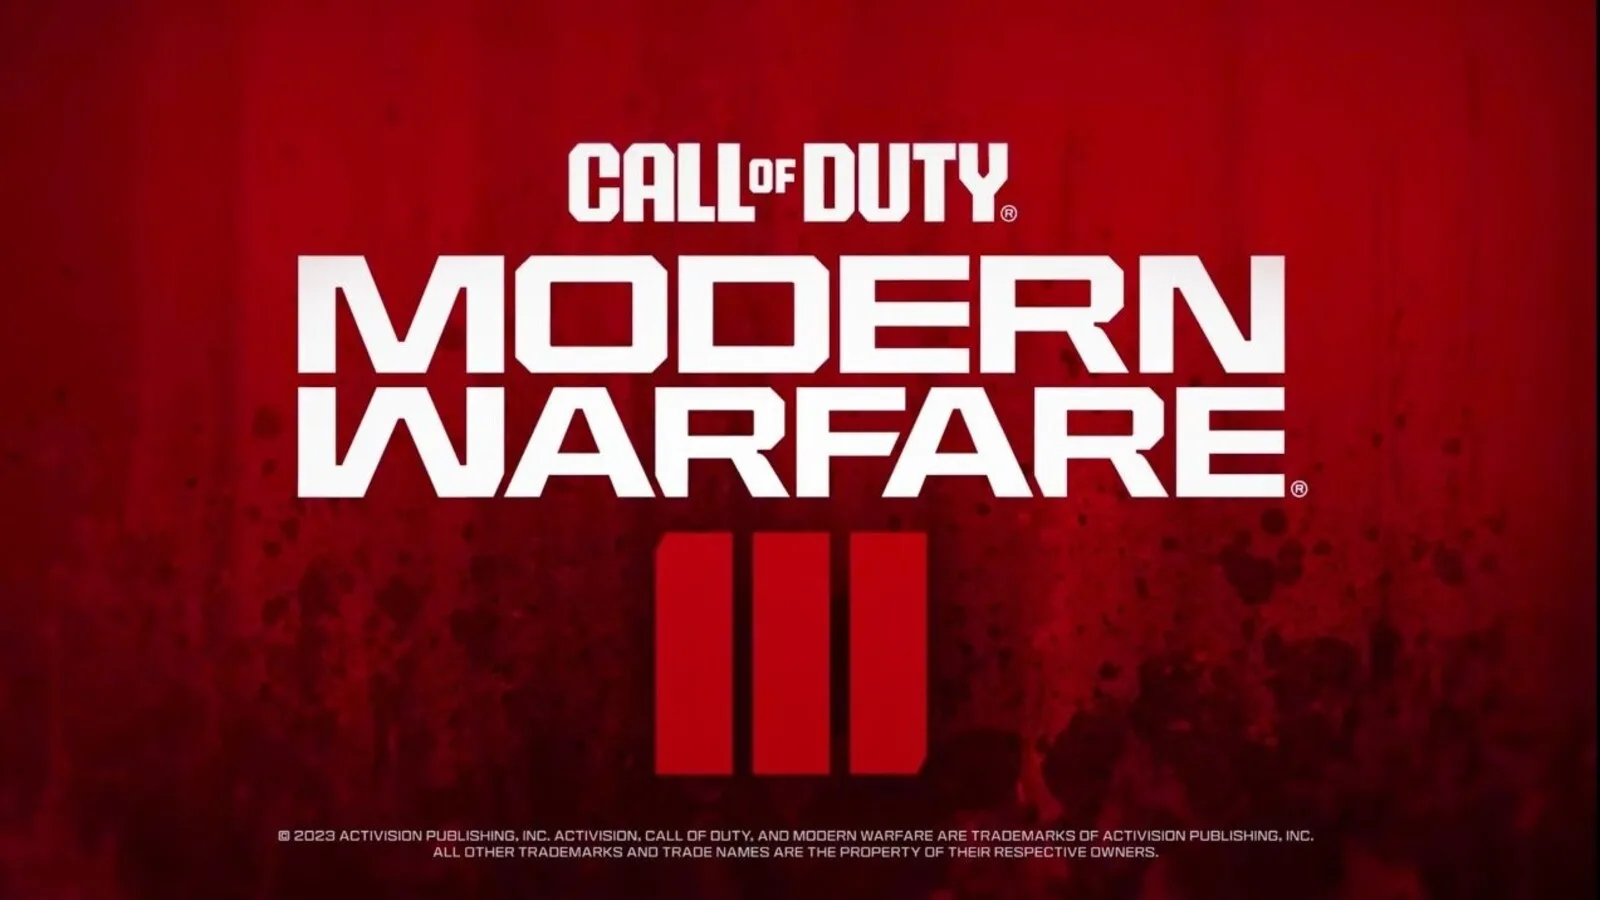 Modern warfare 3 é confirmado para 10 de novembro. Call of duty: modern warfare 3 chega em 10 de novembro, trazendo ação intensa e narrativa envolvente.